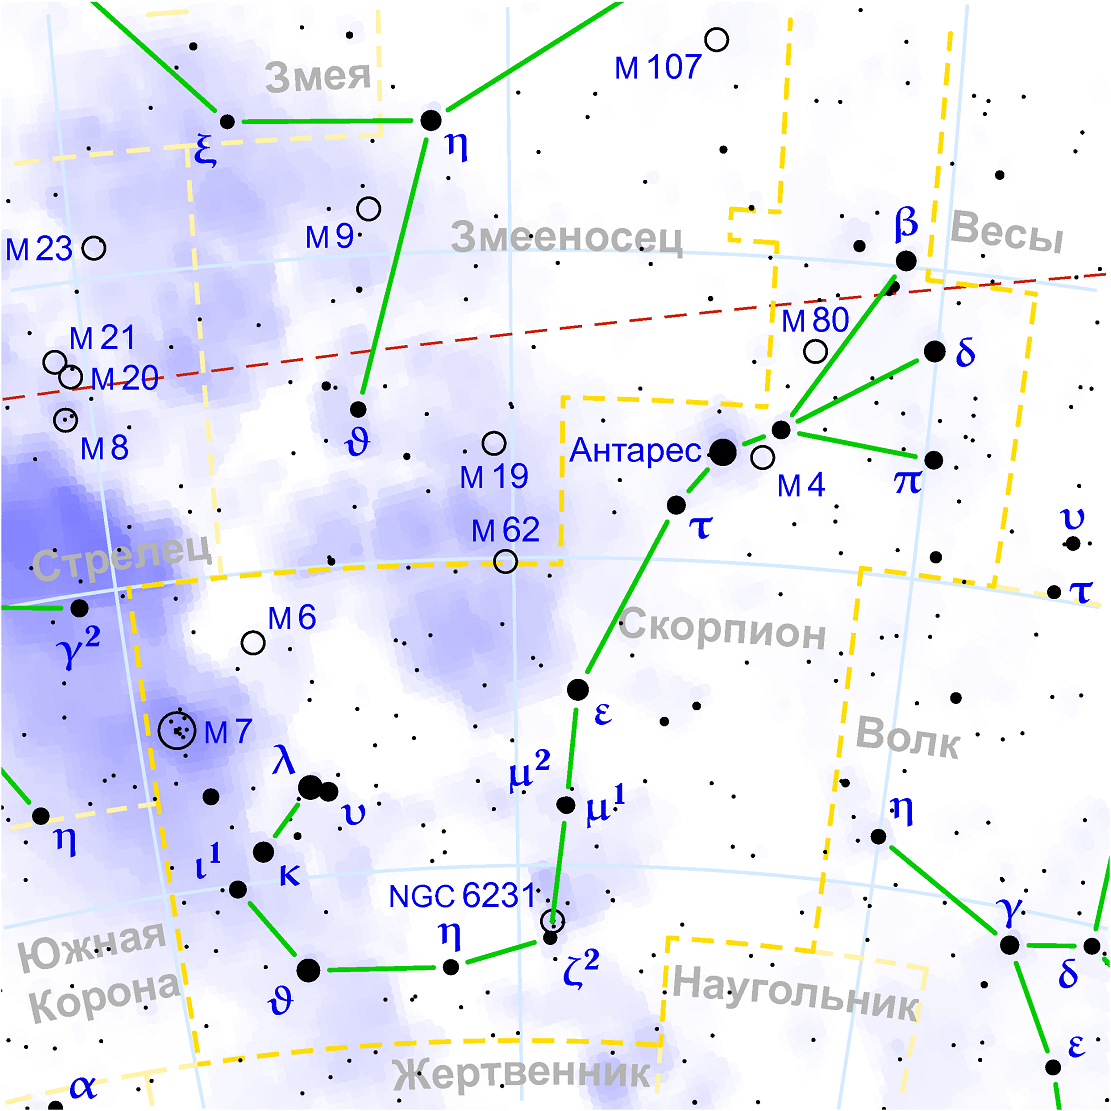 Position de l'amas globulaire Messier 80 dans la constellation du Scorpion